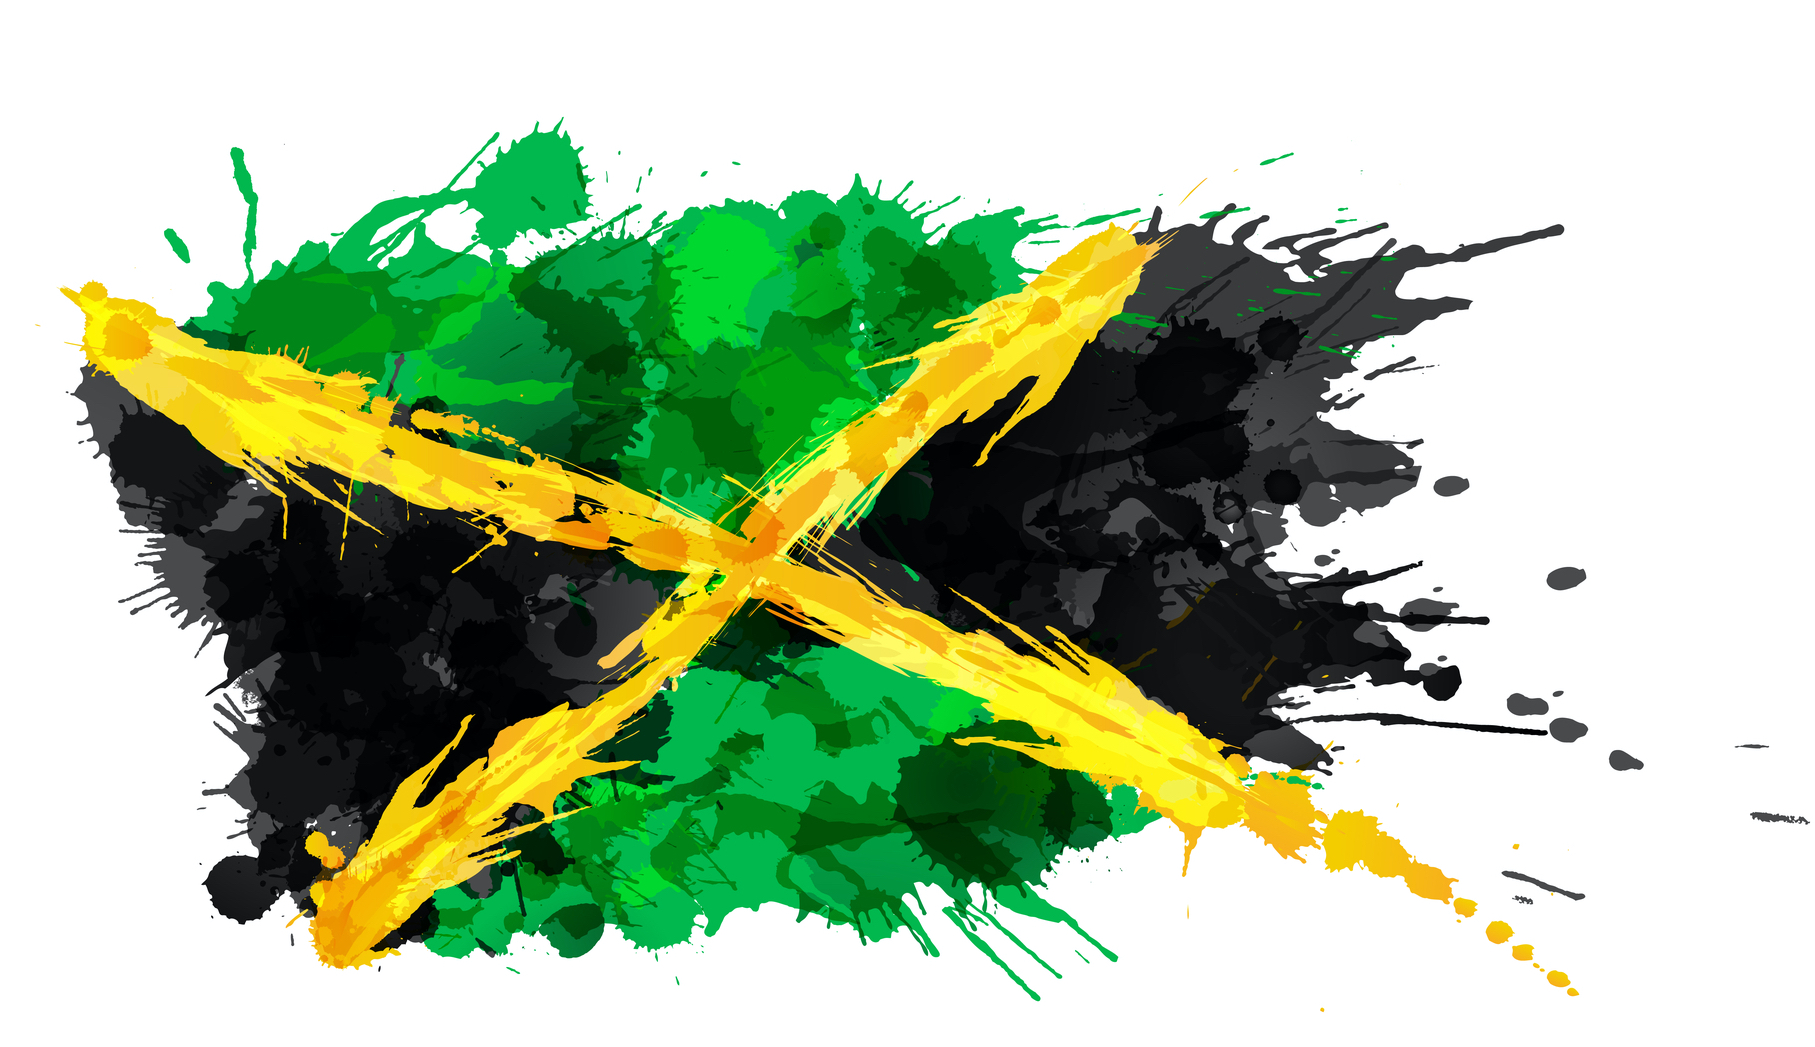 Best of Jamaica